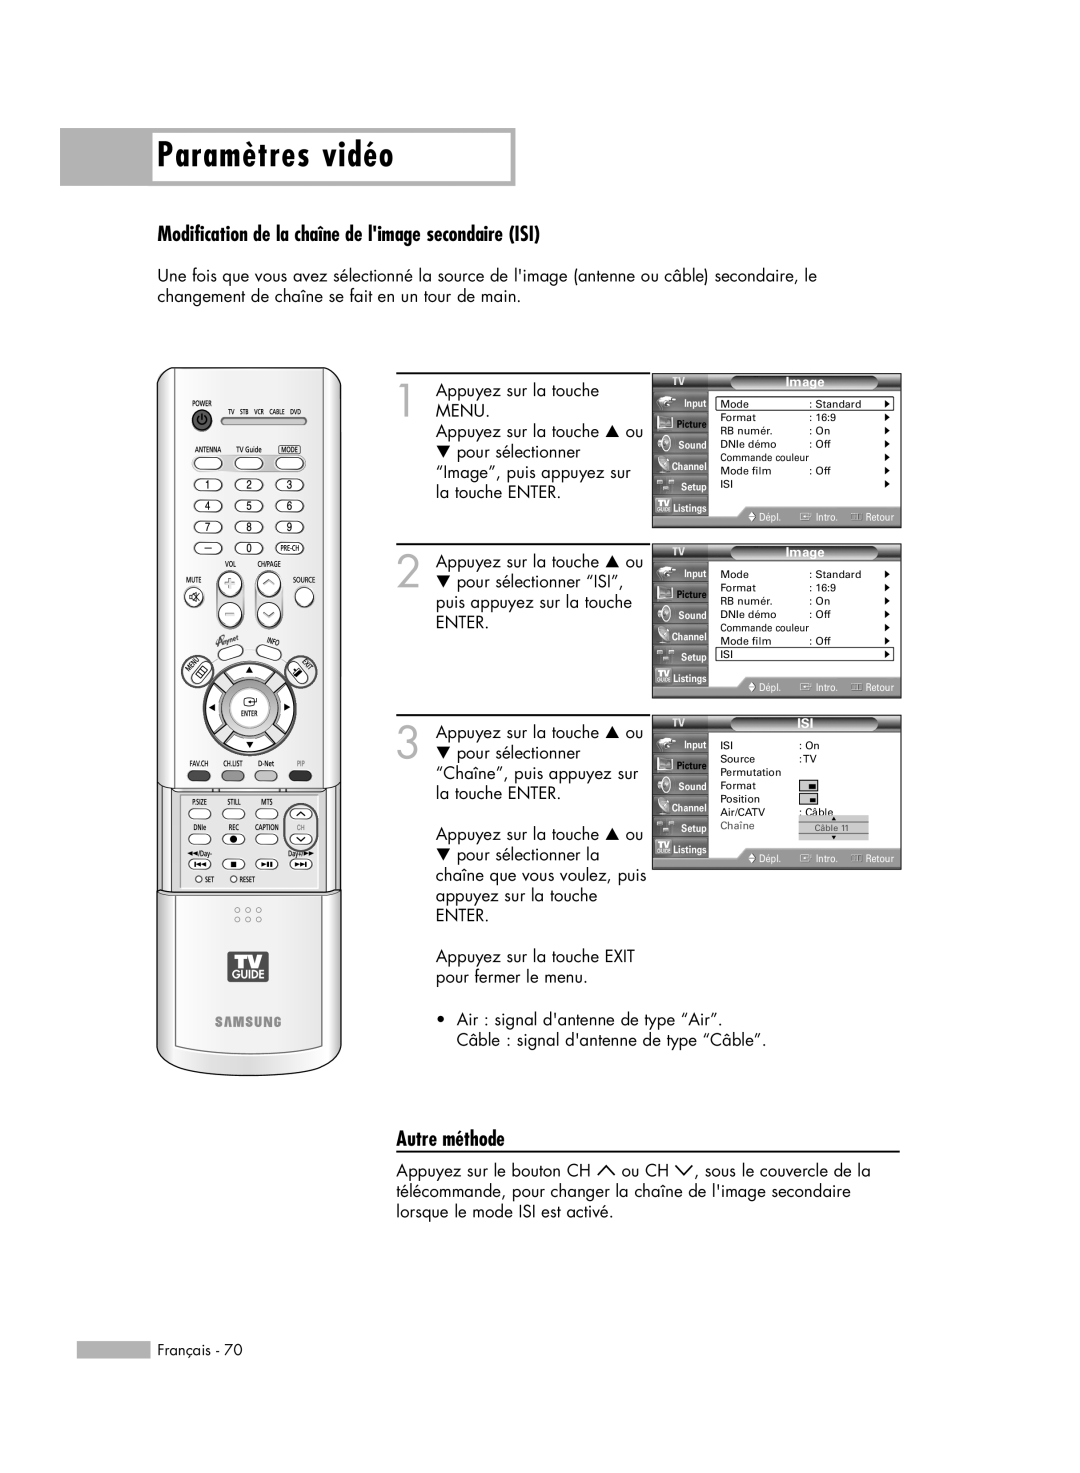 Samsung HL-R5678W manual Modification de la chaîne de limage secondaire ISI, Paramètres vidéo, Autre méthode, Chaîne, Câble 